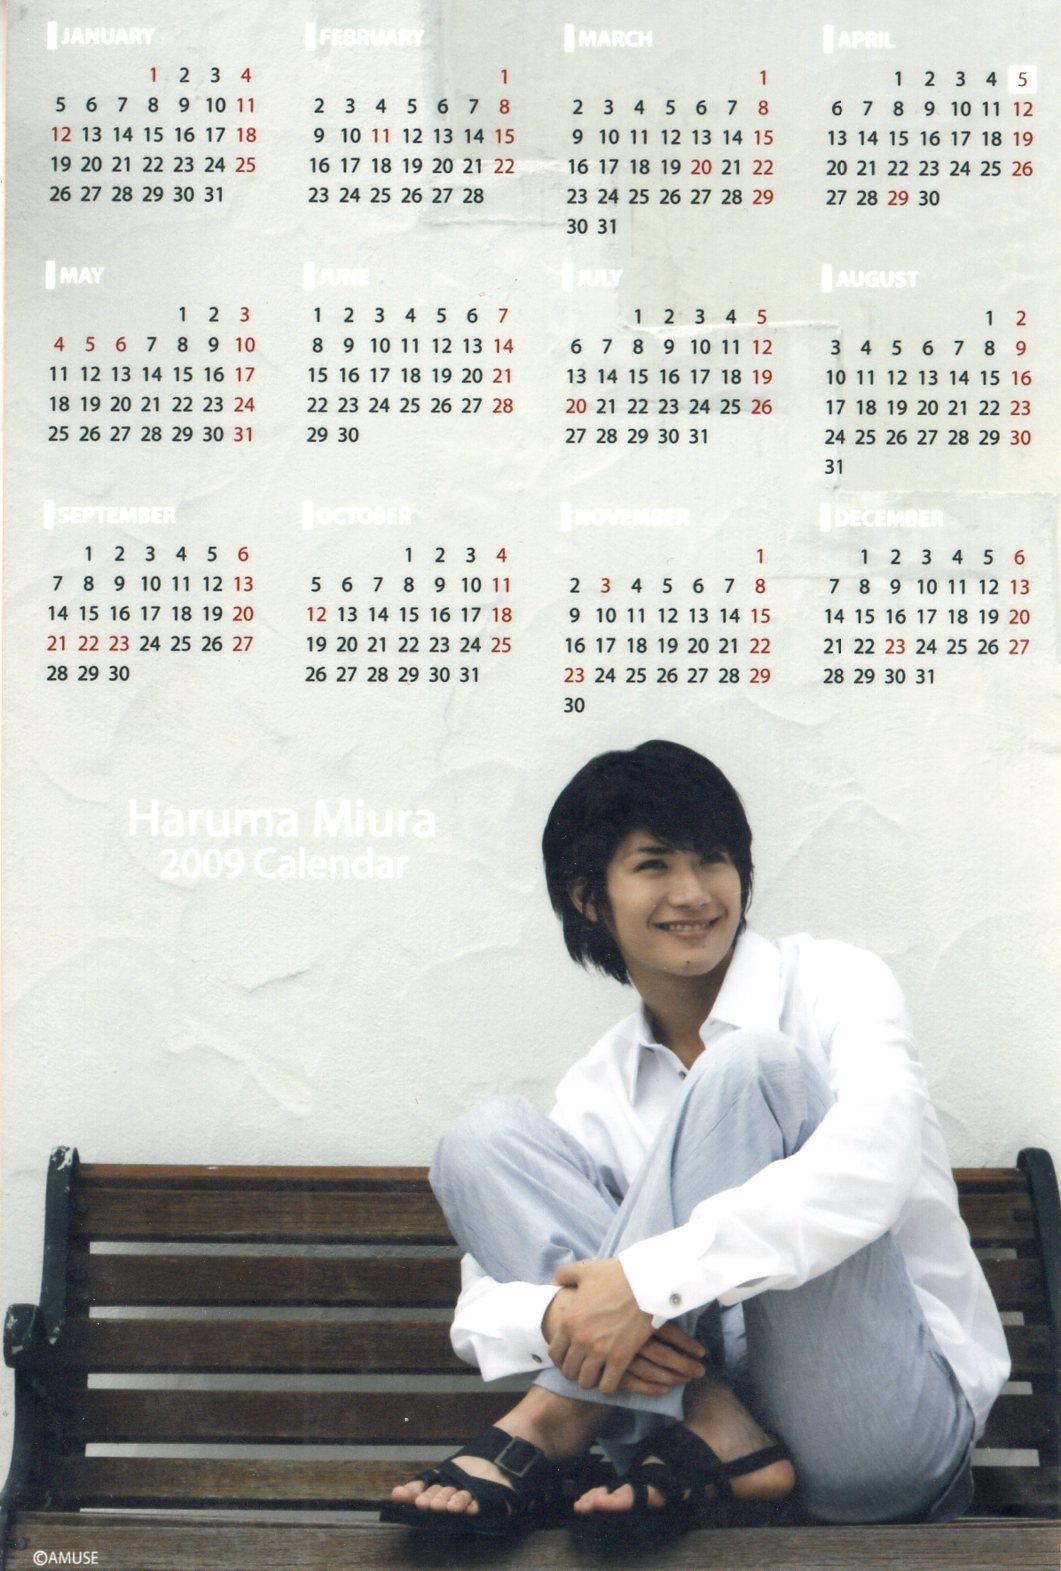 三浦春馬 2009 カレンダー